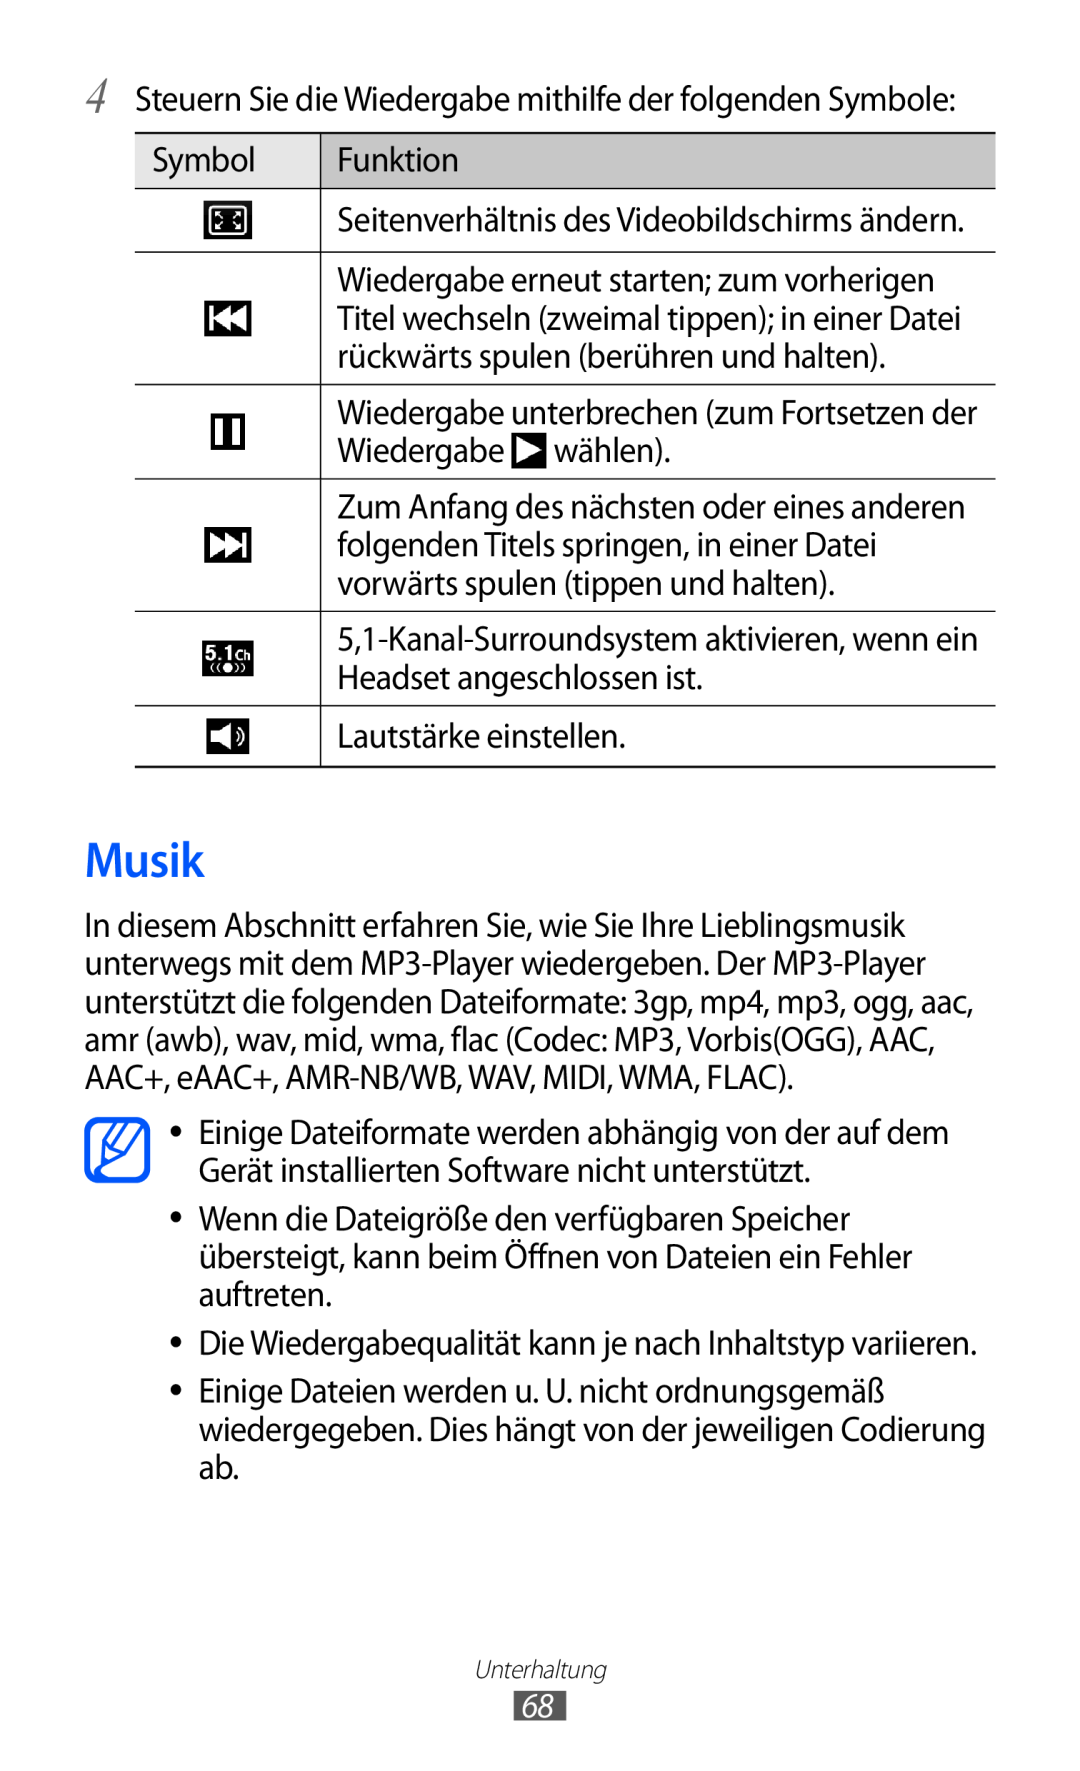 Samsung GT-S6500RWDTUR Musik, Seitenverhältnis des Videobildschirms ändern, Titel wechseln zweimal tippen in einer Datei 